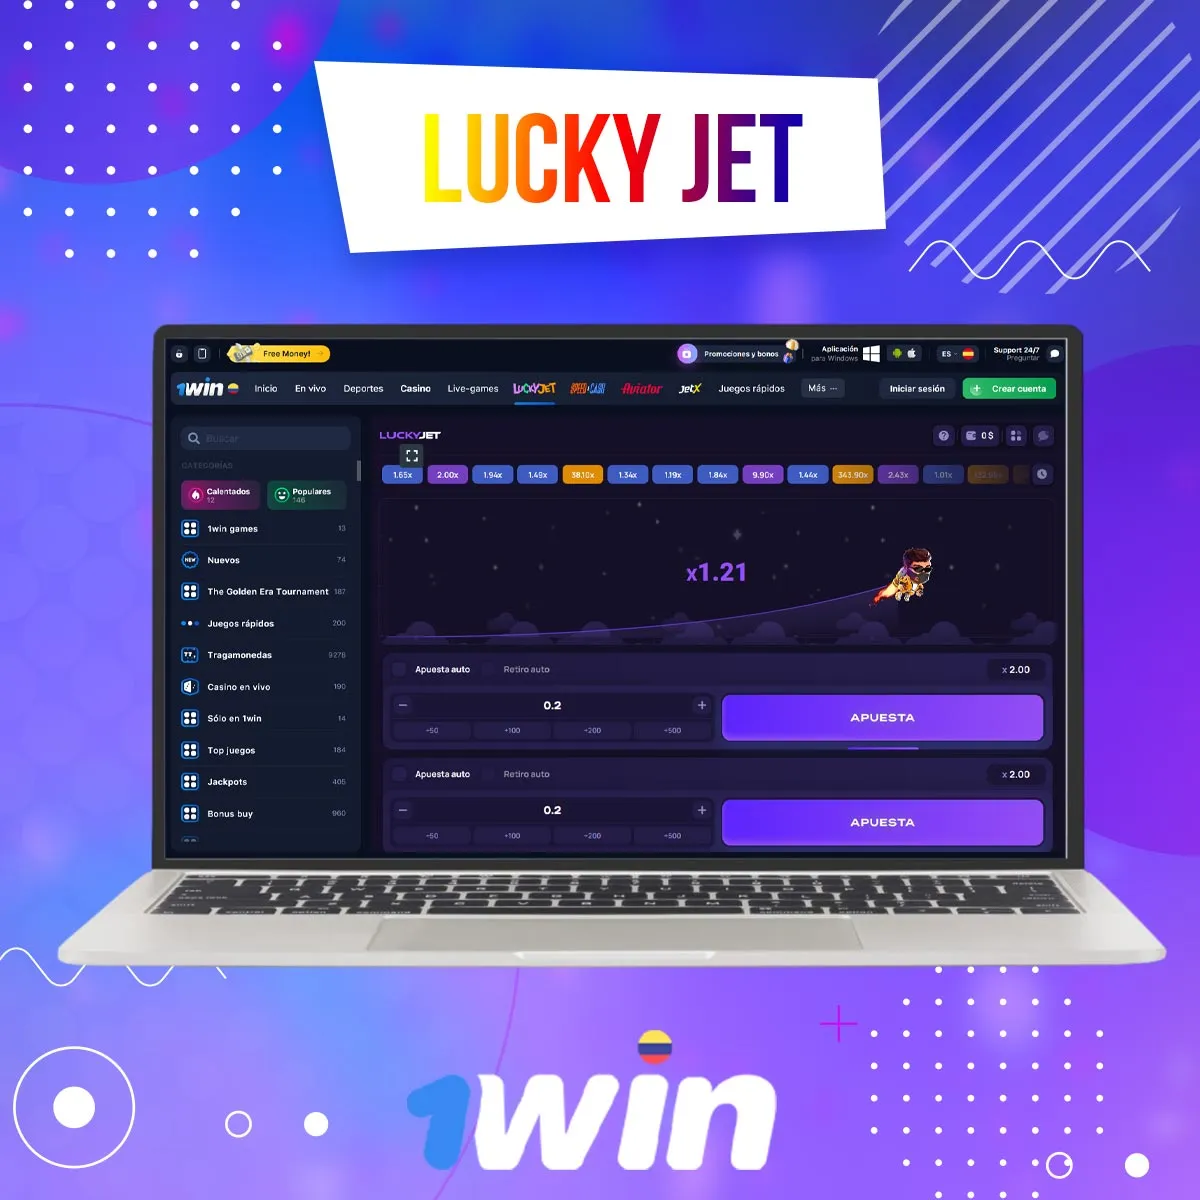 Cómo jugar a Lucky Jet en la aplicación móvil 1win